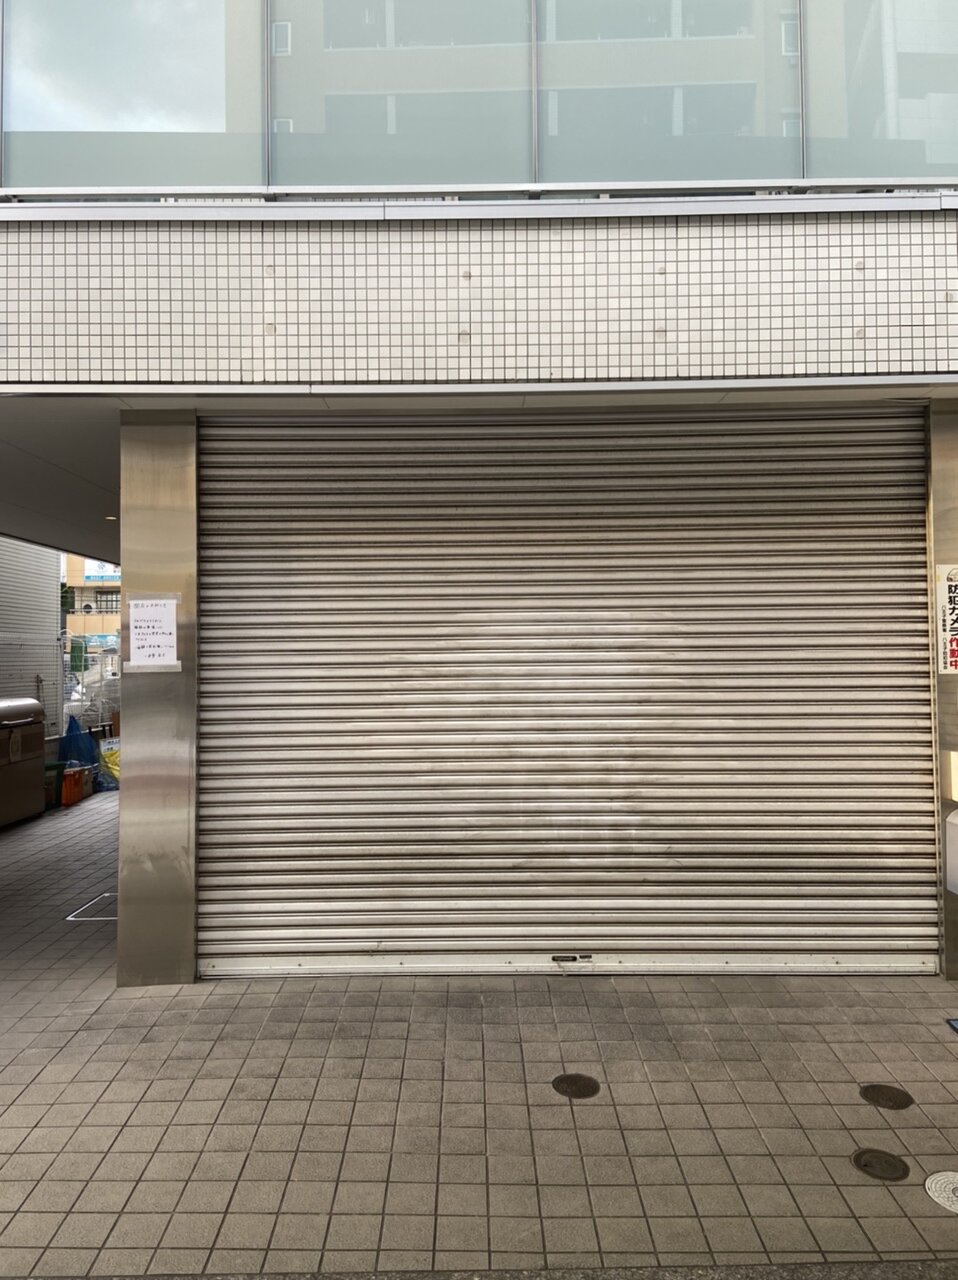 【閉店】安くておいしい食パン専門店『一本堂』が閉店していた…